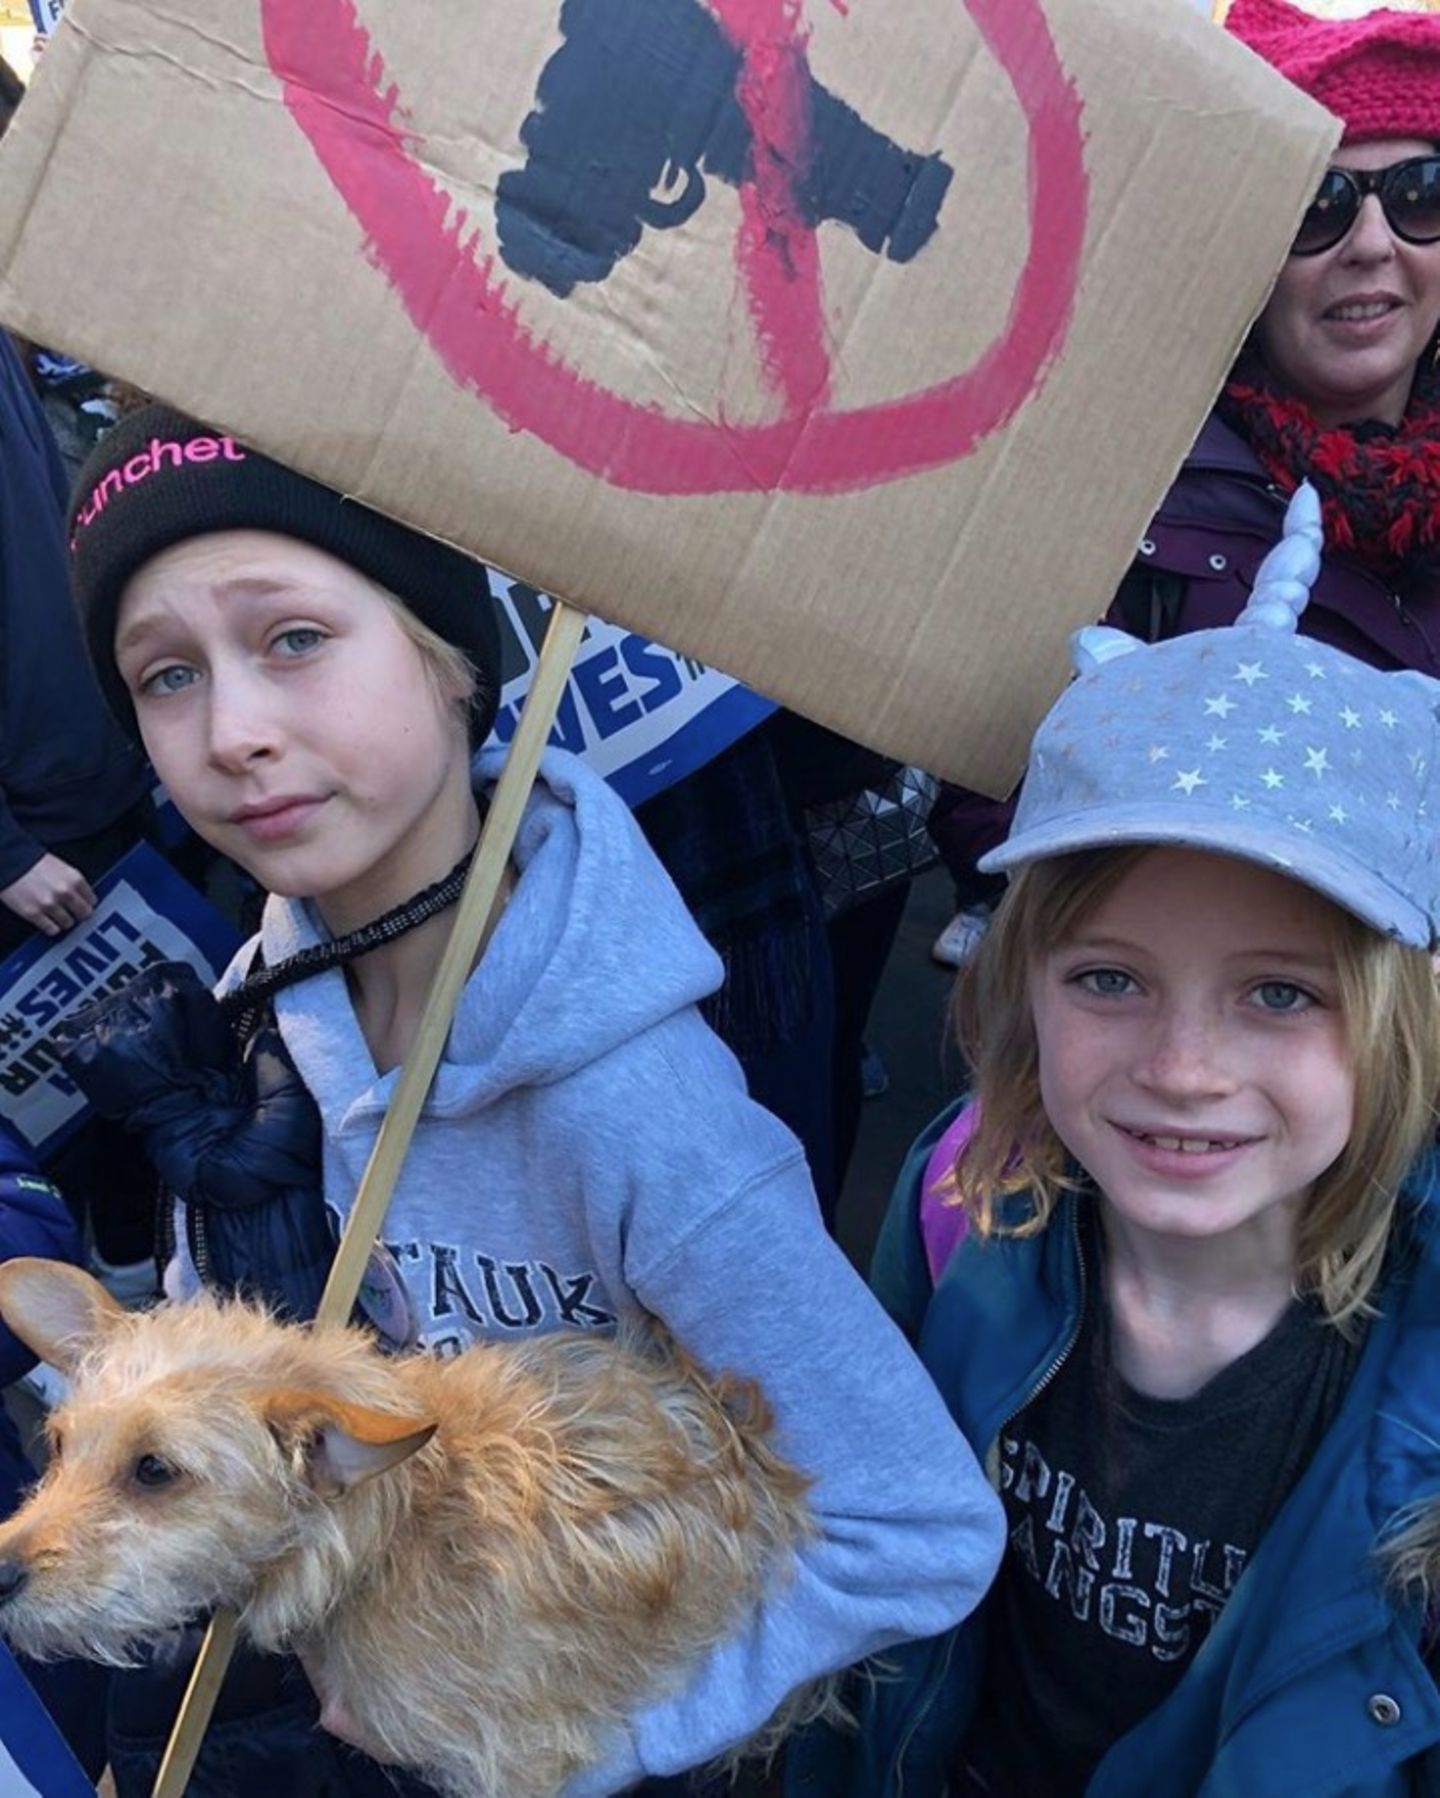 24. März 2018   Stolz postet Schauspieler Liev Schreiber ein Foto seiner Kids: Gemeinsam nehmen sie am "March for Our Lives" teil, einer Demonstration für wirksame Maßnahmen zur Kontrolle von Schusswaffen in privaten Händen.